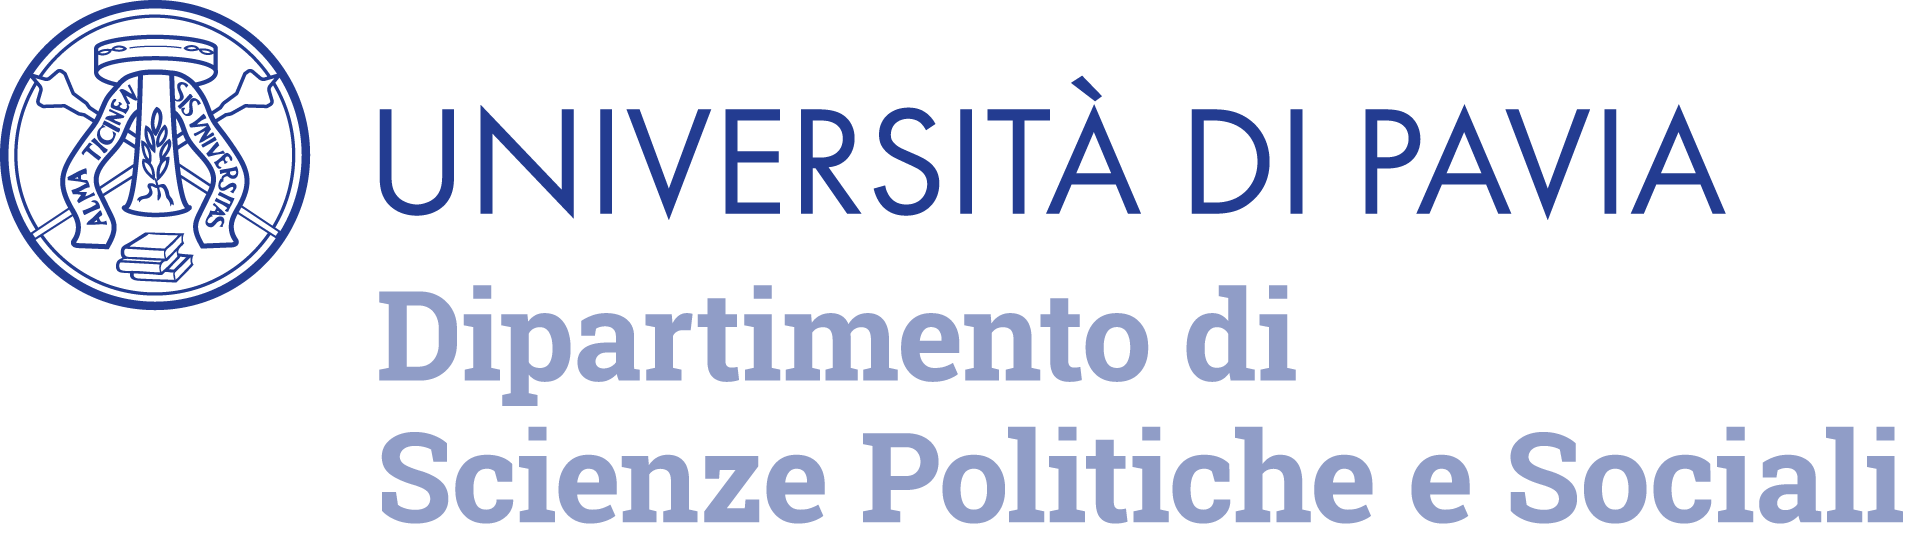 Università degli Studi di Pavia - Dipartimento di Scienze Politiche e Sociali